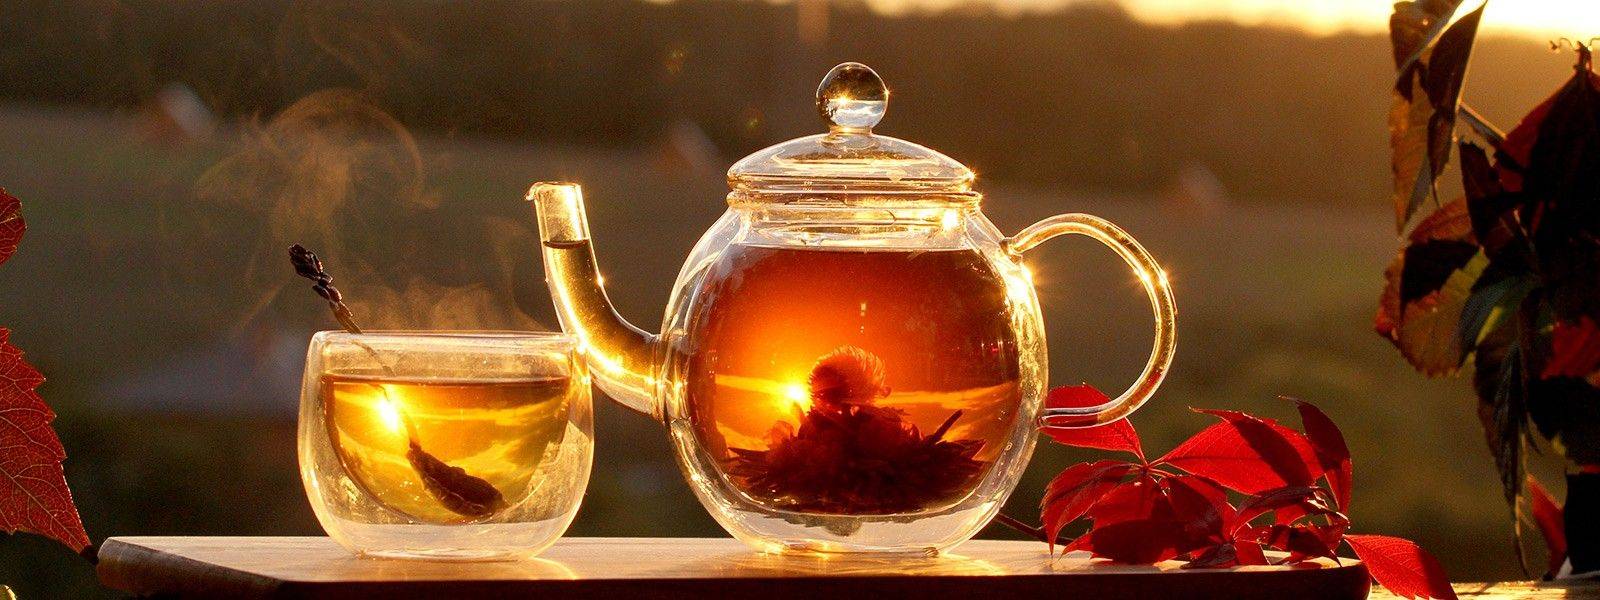 Gläserne Teekanne und -tasse mit Teeblüte darin